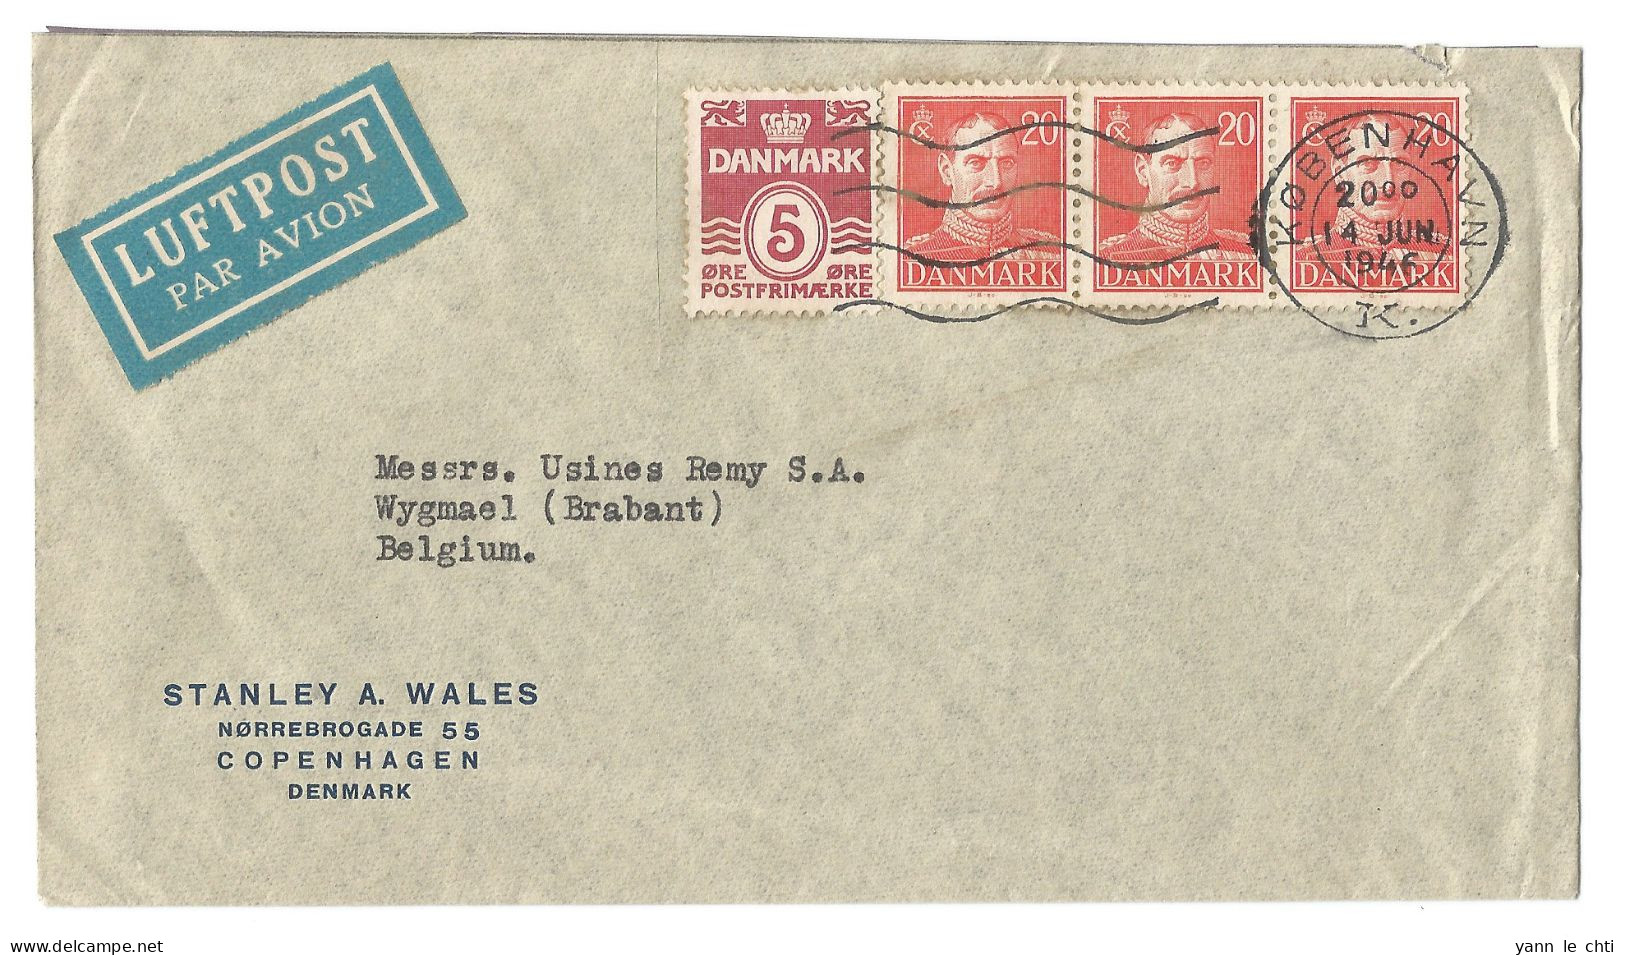 Brief Enveloppe Luftpost 1946 Stanley Wales Copenhagen Denmark N. Usines Remy Wygmael Belgique Belgie Bloc 3 X 20 Ore - Cartas & Documentos